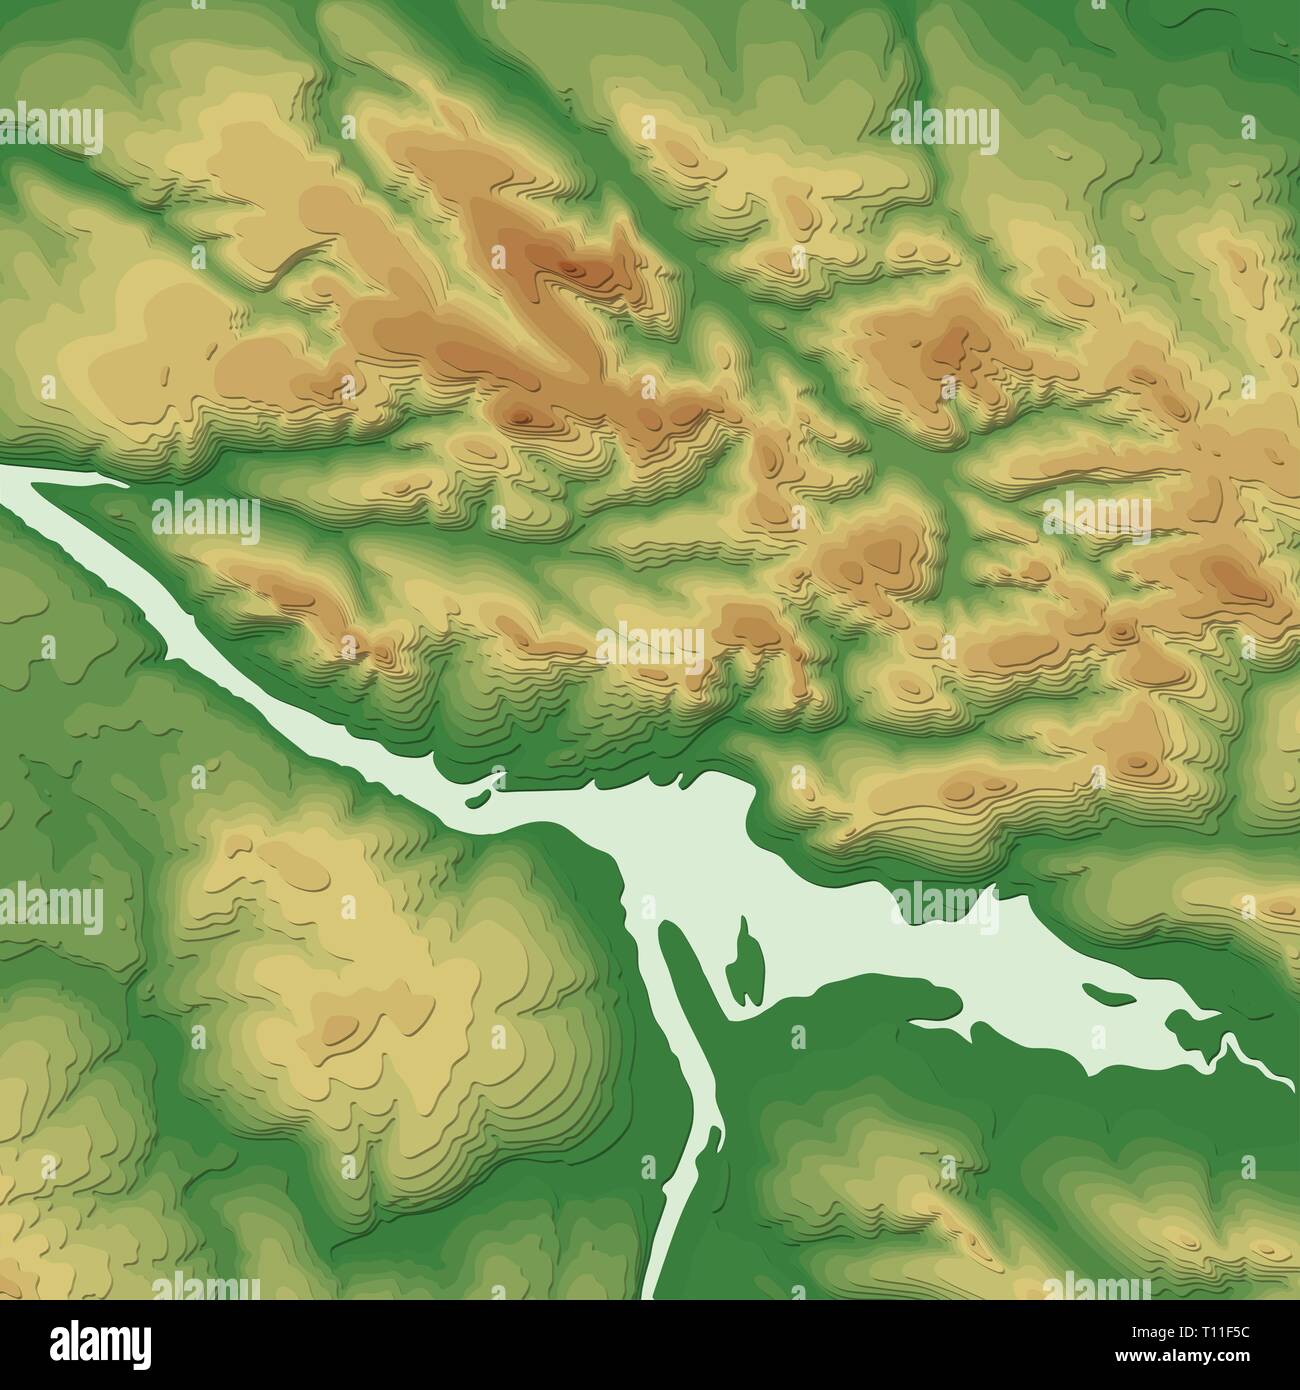 Geographic Information System Banner mit topographischen Hintergrund. Vektor abstrakte topografische Karte Konzept Stock Vektor